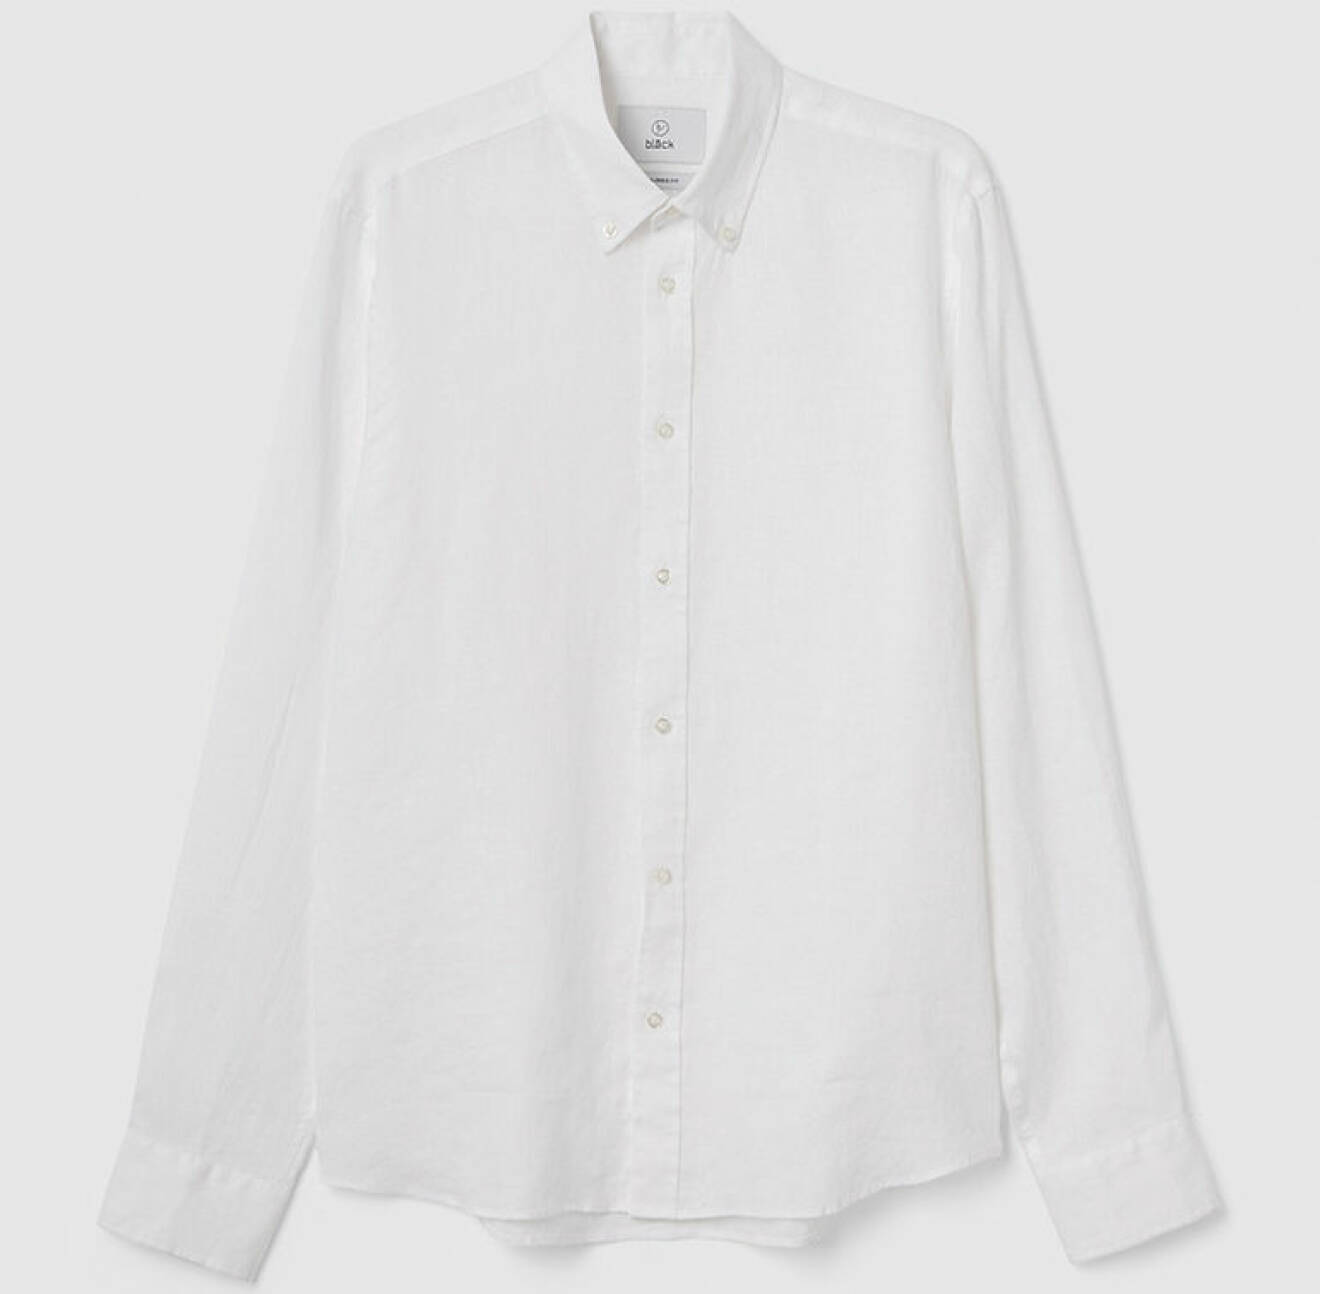 vit skjorta i stil med Luis Enrique i EM